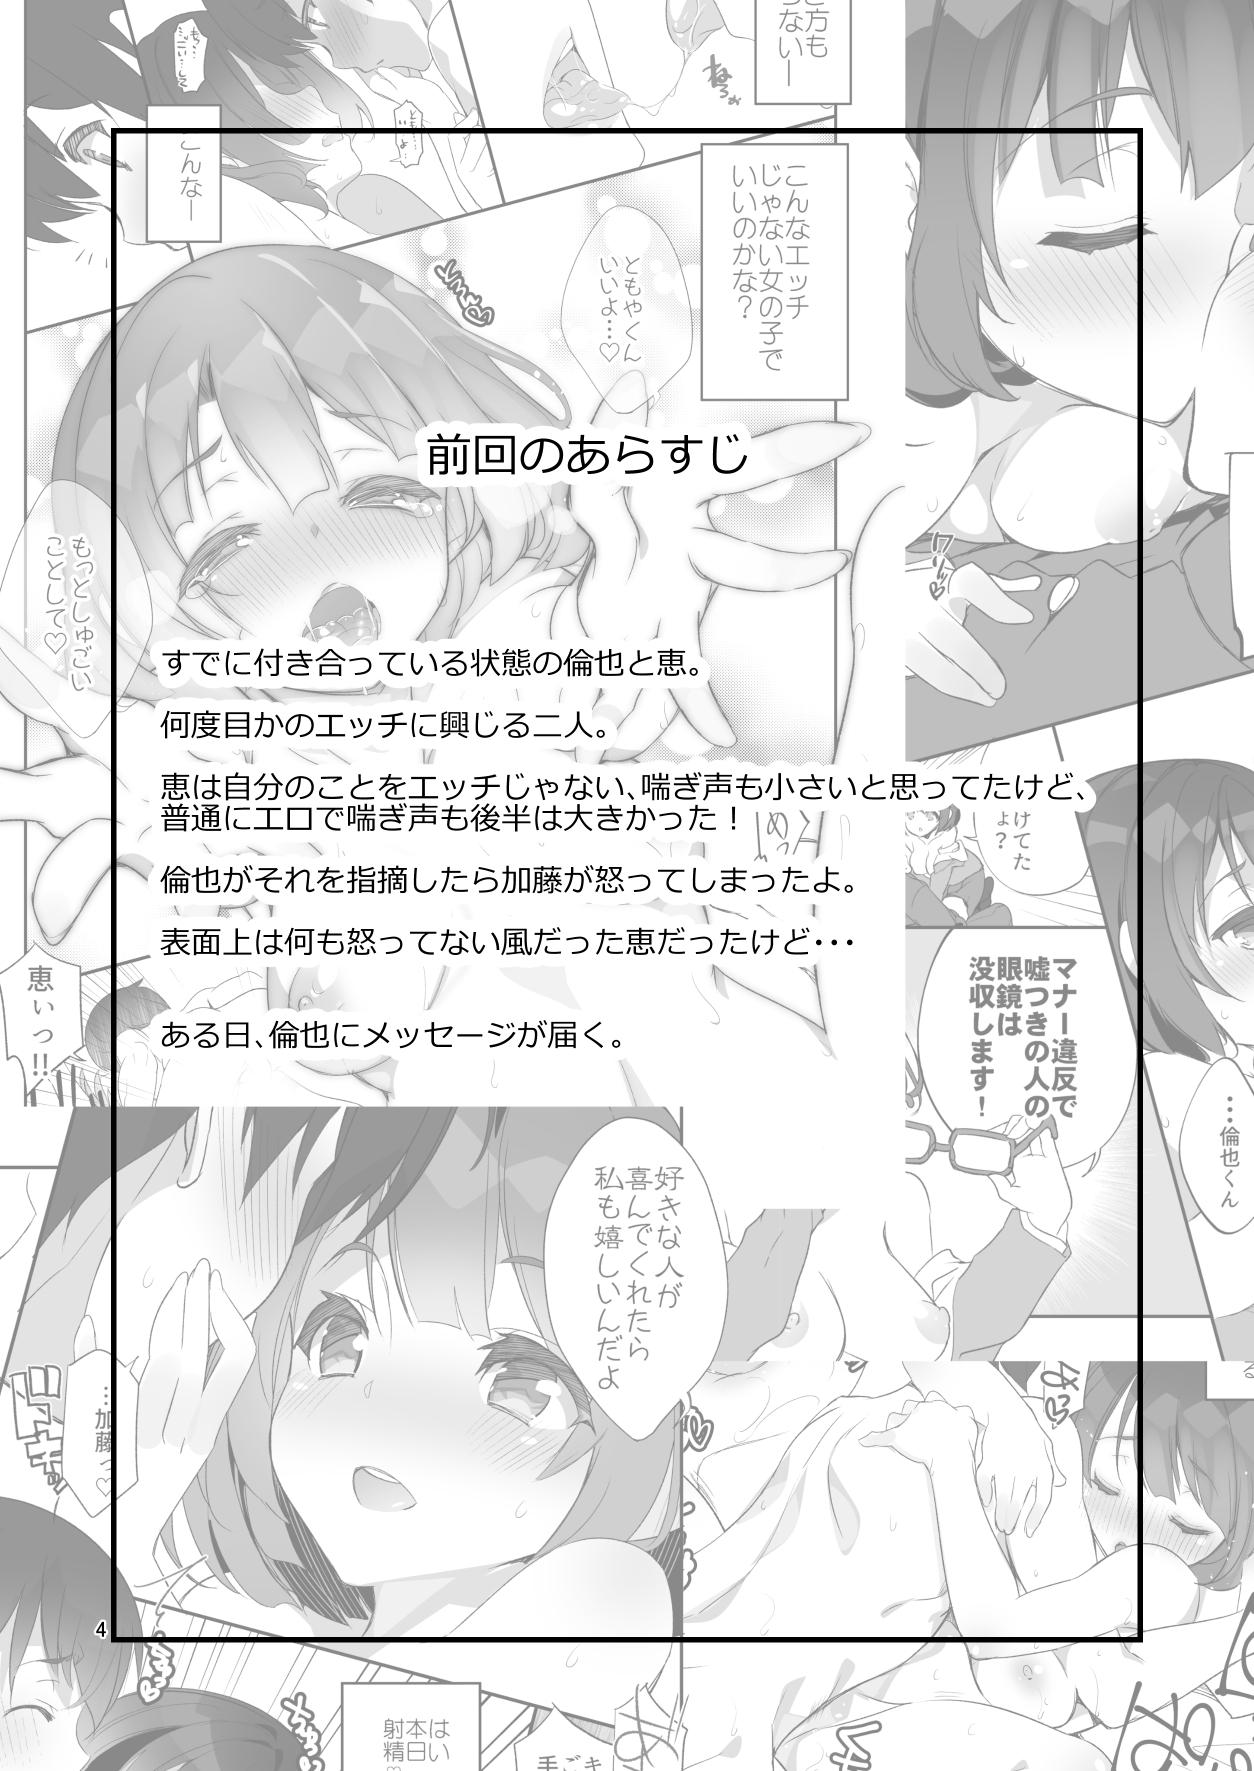 Leite Futsukano wa Wotakare no Megane o Toru. 2 - Saenai heroine no sodatekata Realitykings - Page 4